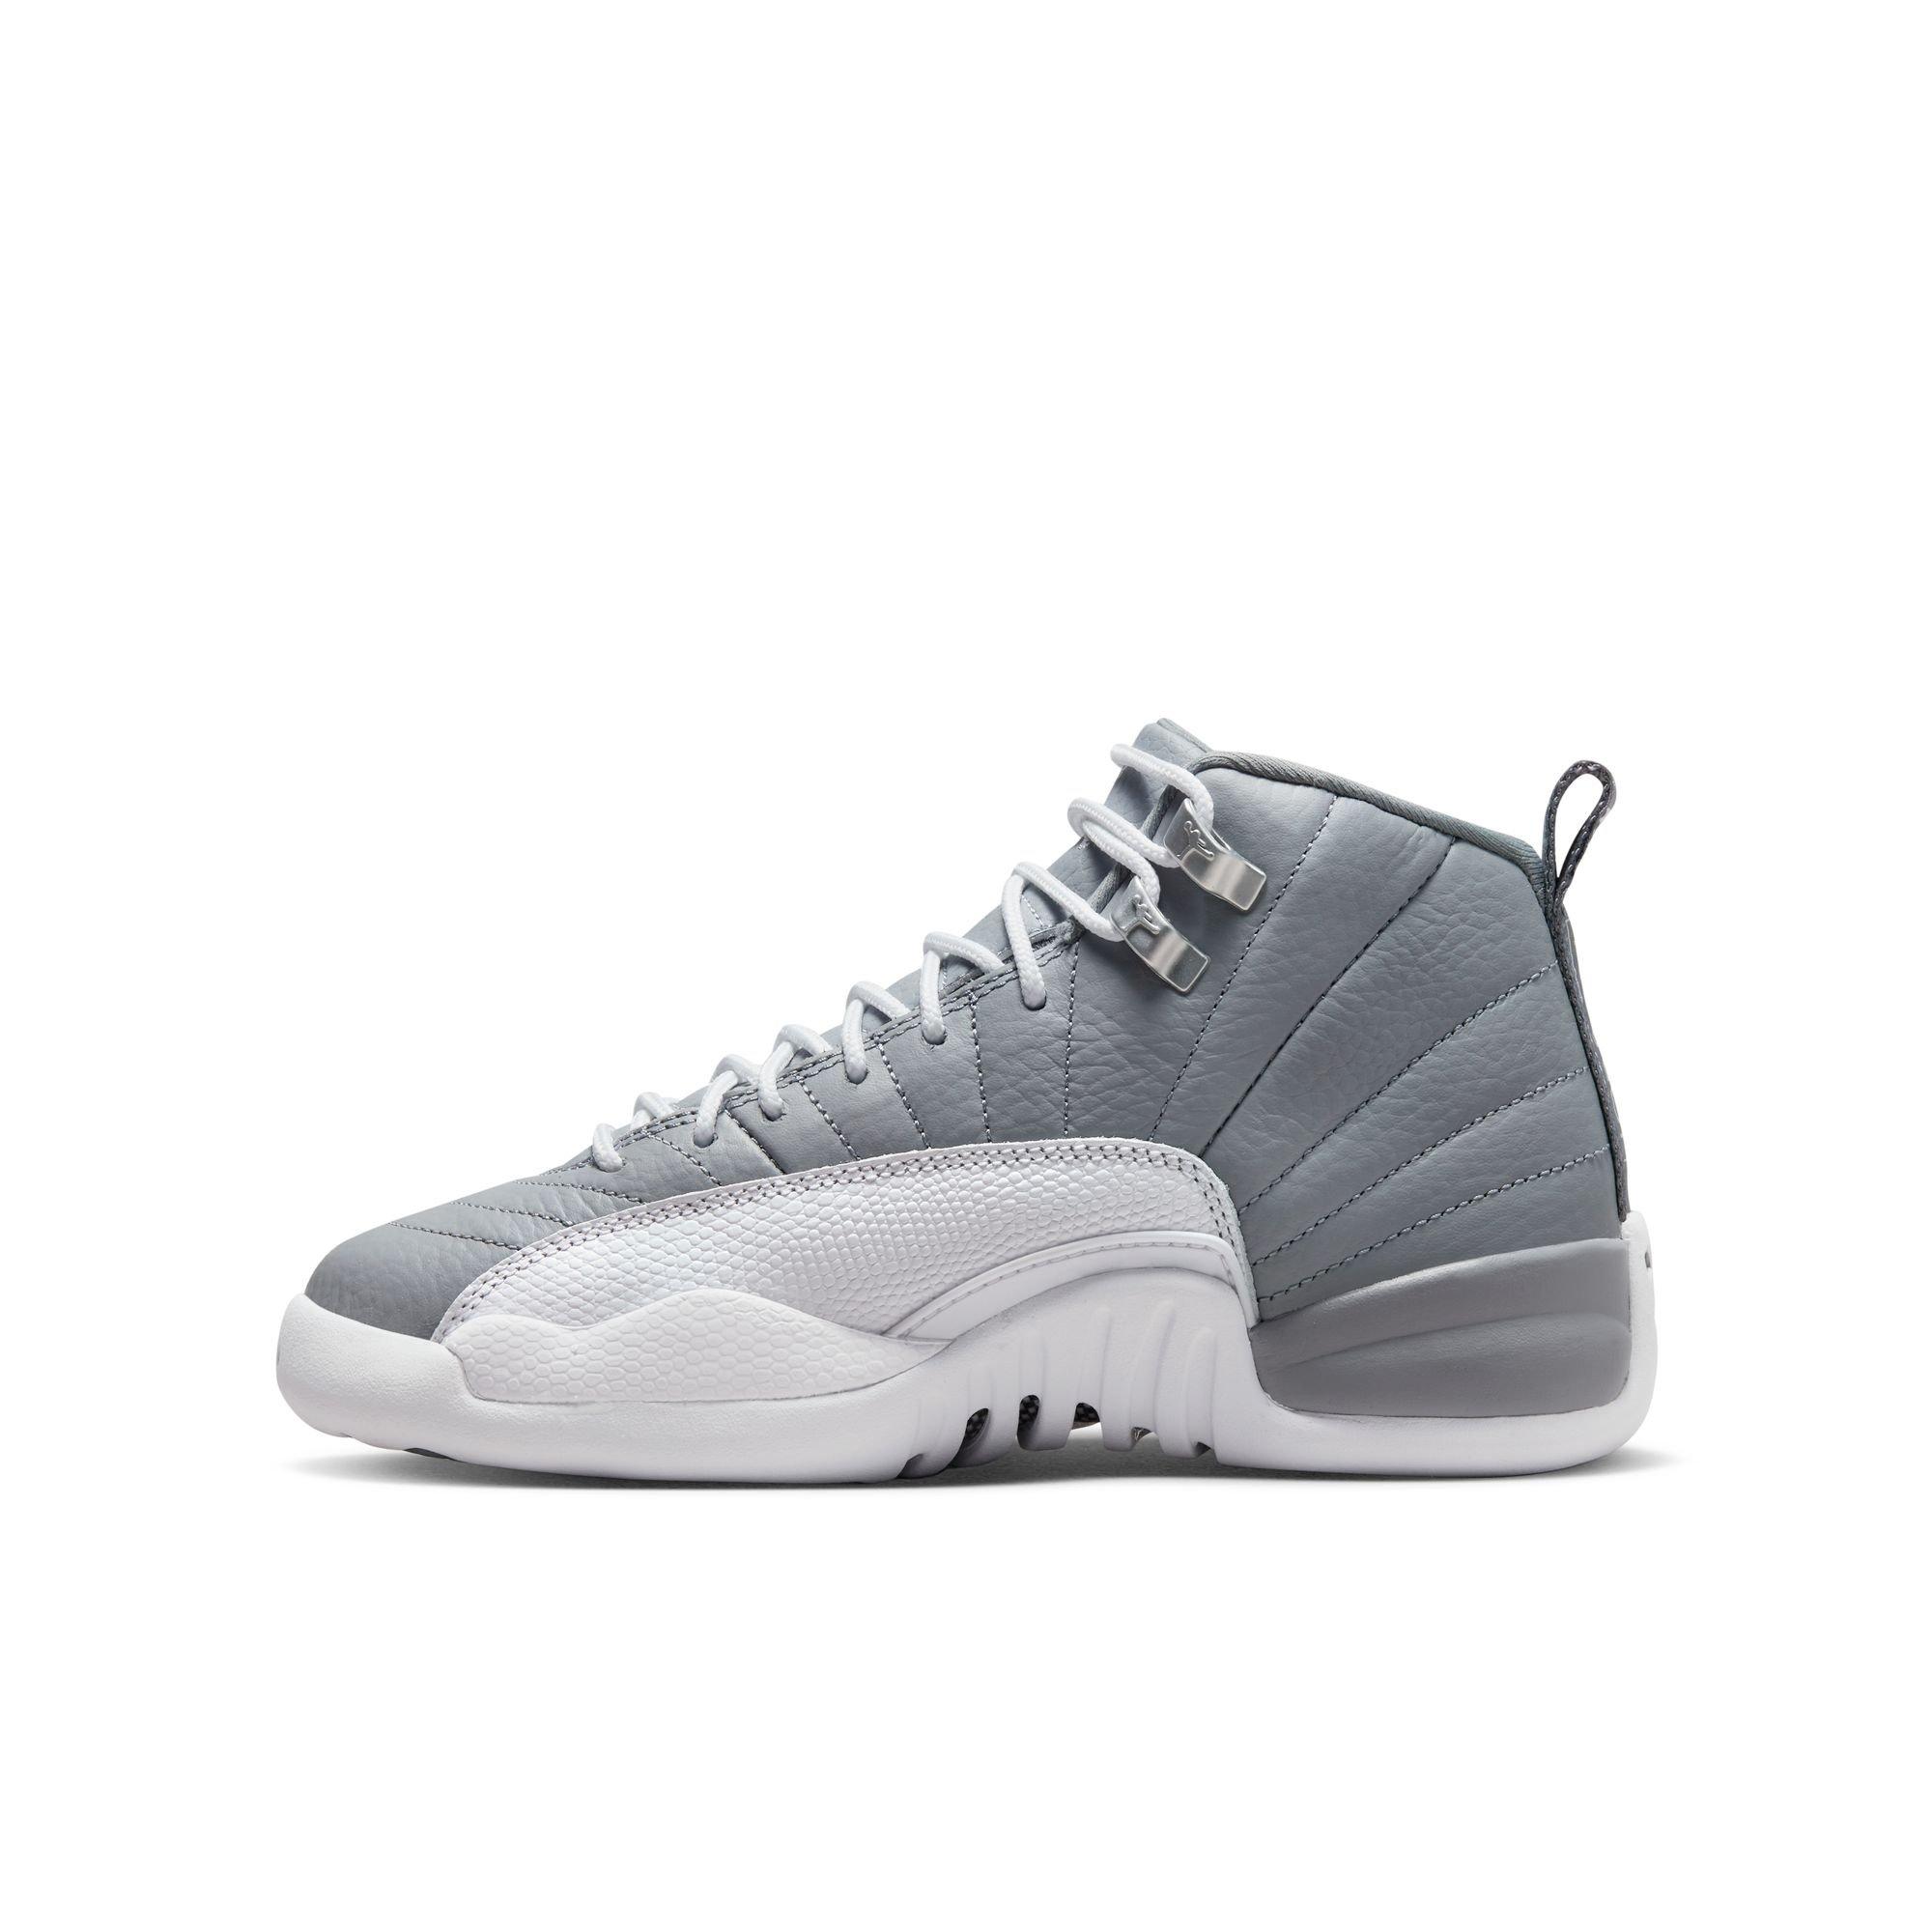 gray white jordan 12s